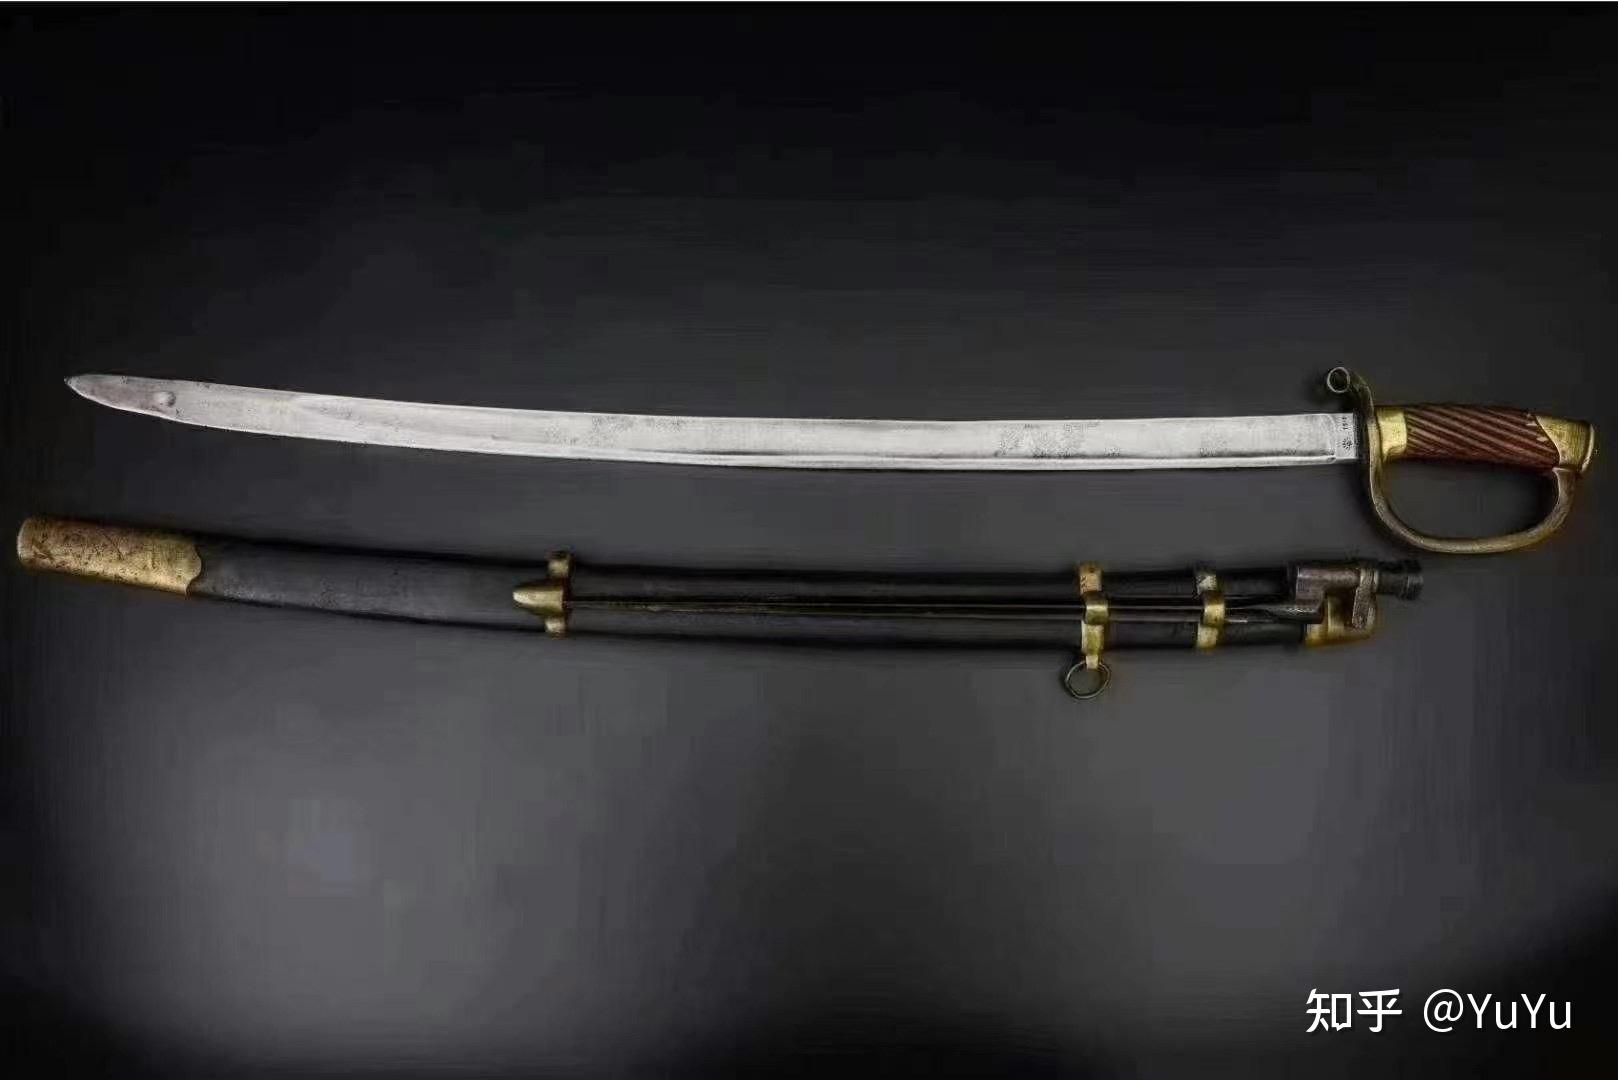 第一次统一制式装备的军刀,俄军最早使用的是法国样式的军刀,但随着